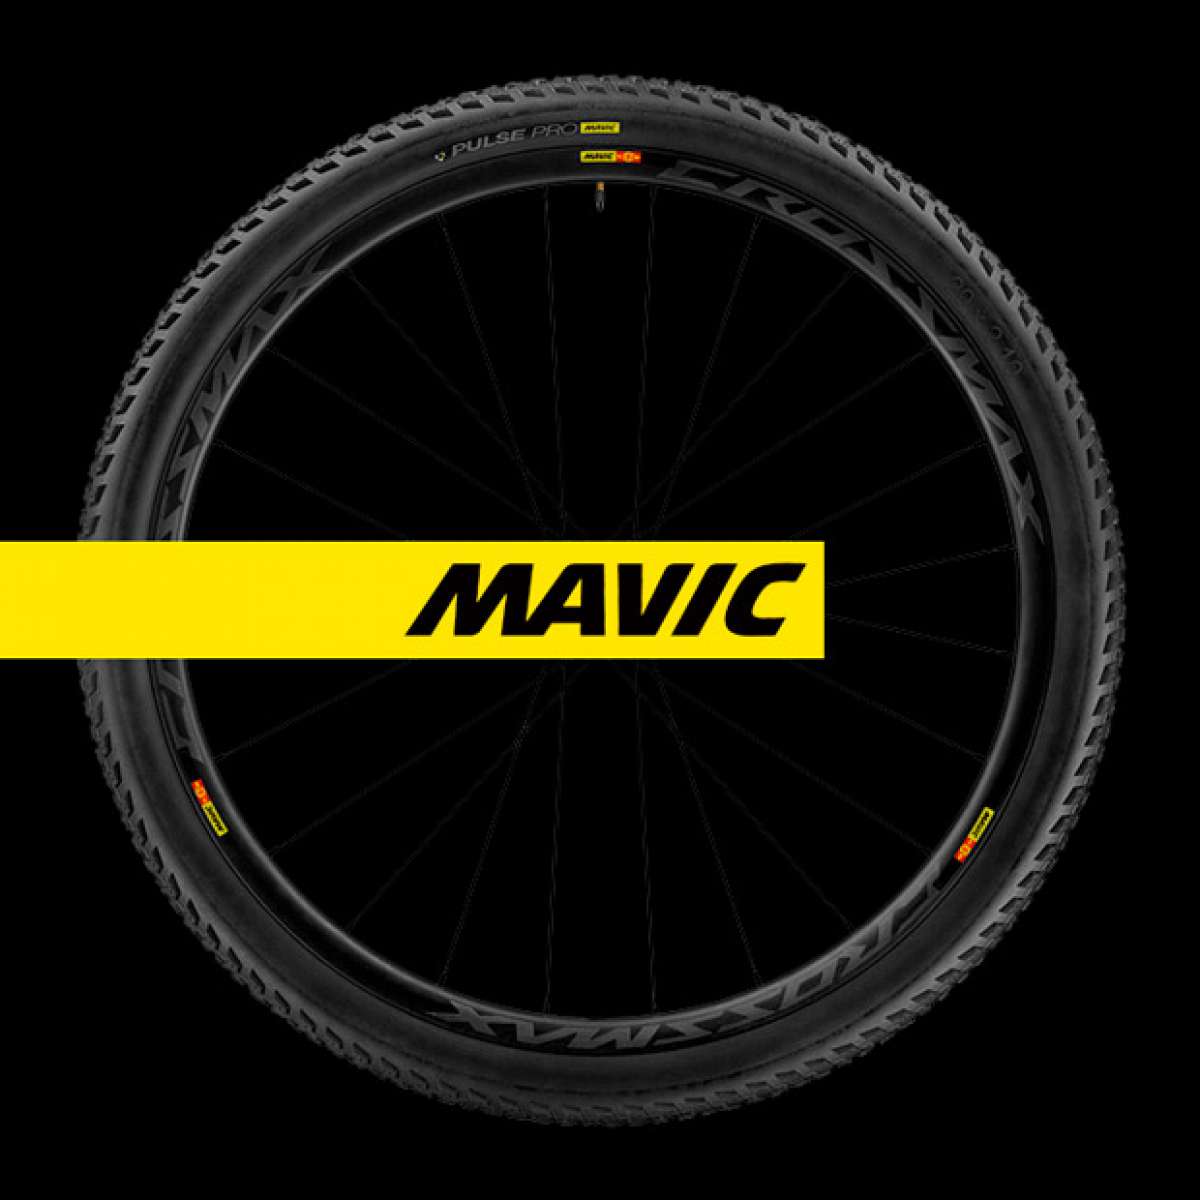 Mavic Crossmax PRO Carbon, el conjunto rueda-neumático más dinámico de la firma francesa